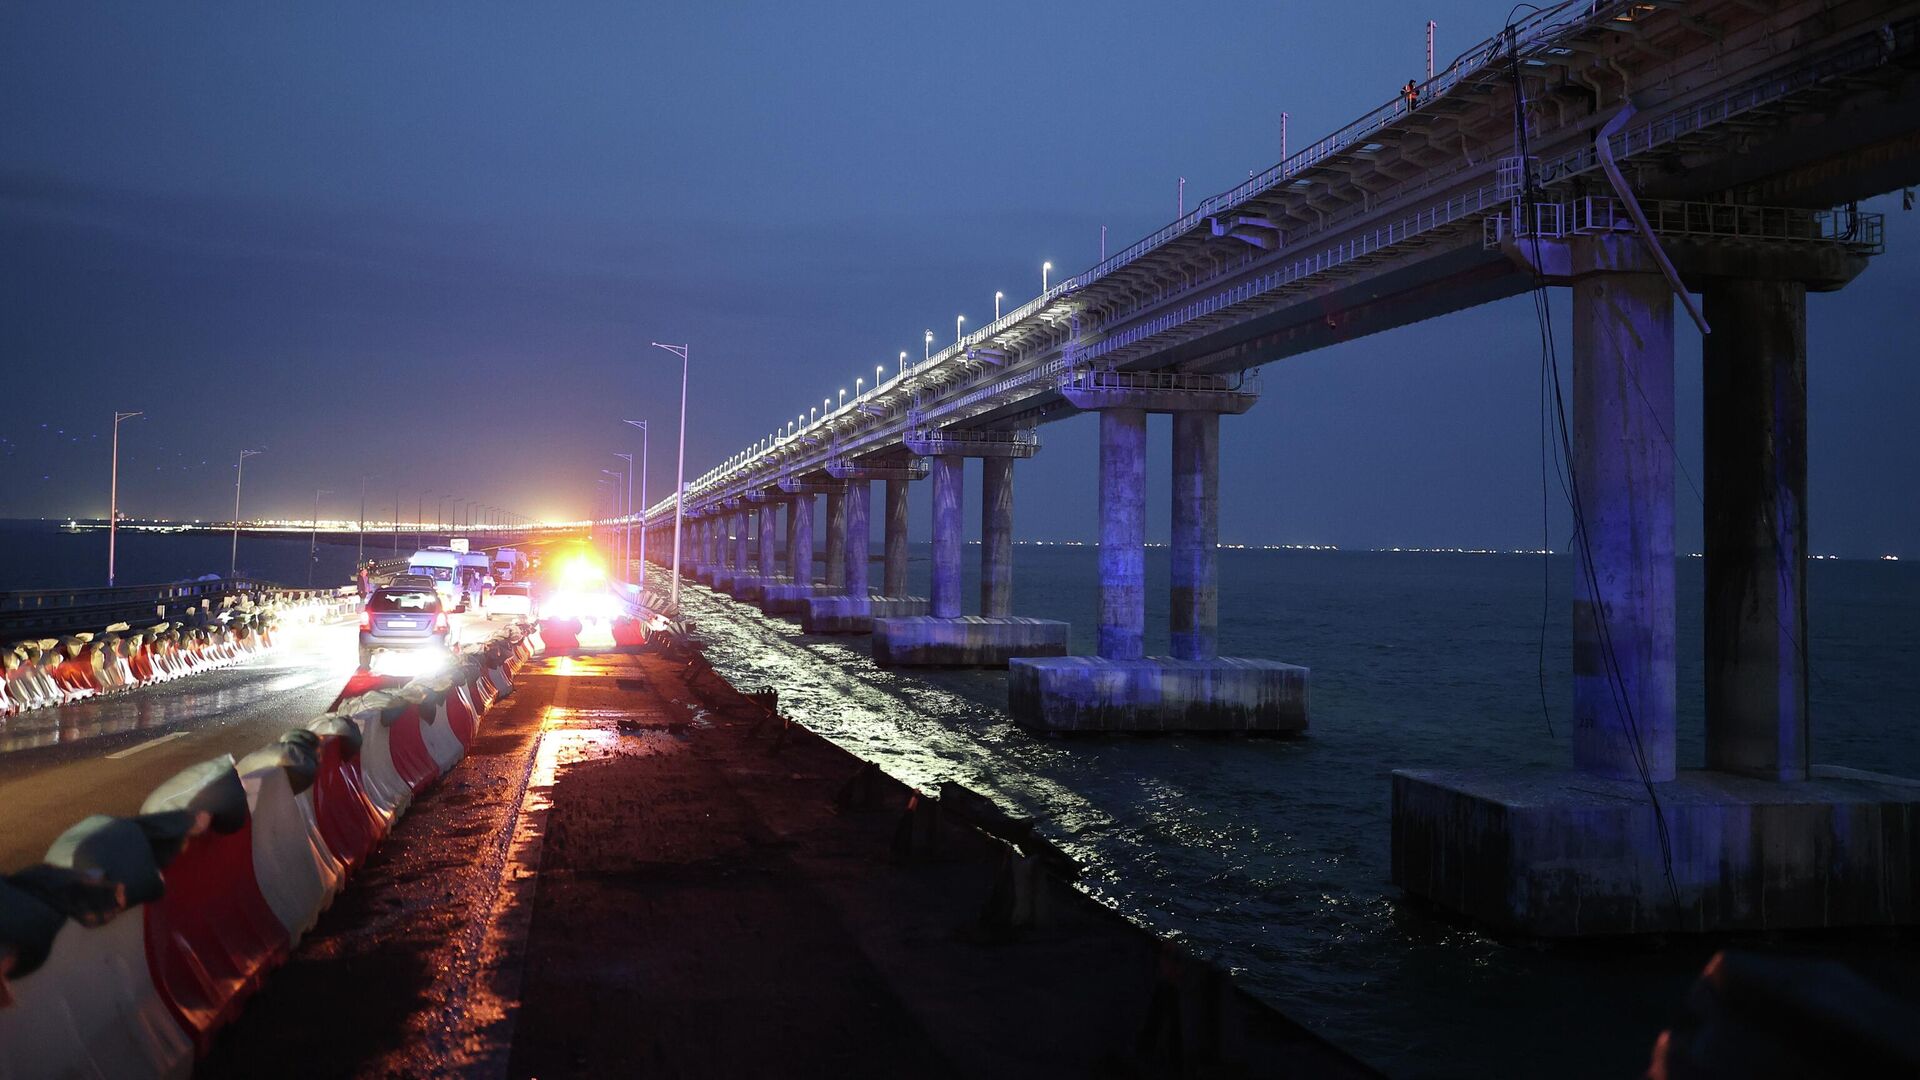 Крымский мост сегодня 2024 год